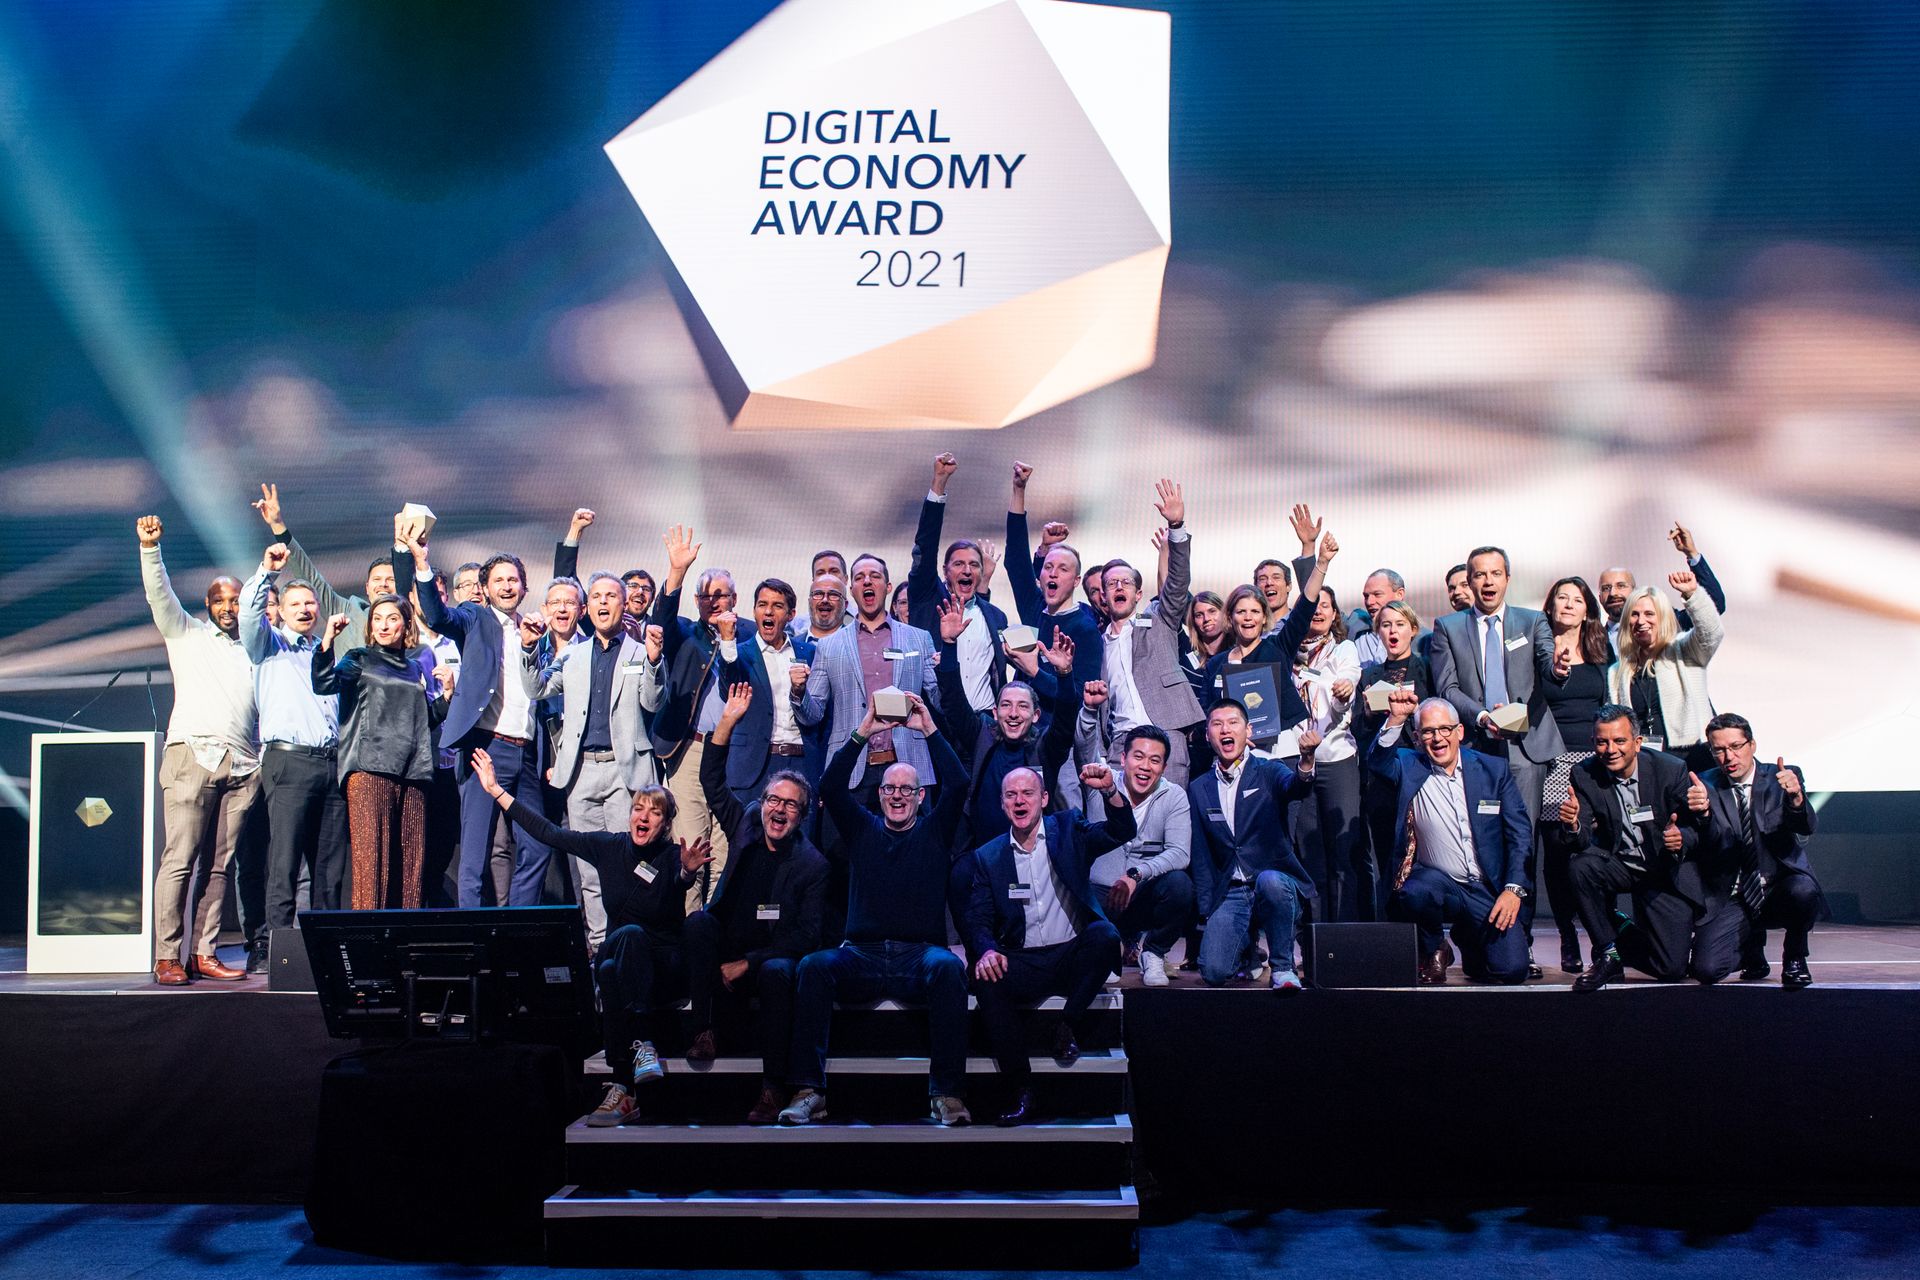 Todos los ganadores en la ceremonia del "Premio a la Economía Digital" con motivo del "Día Digital de Suiza" el 10 de noviembre de 2021